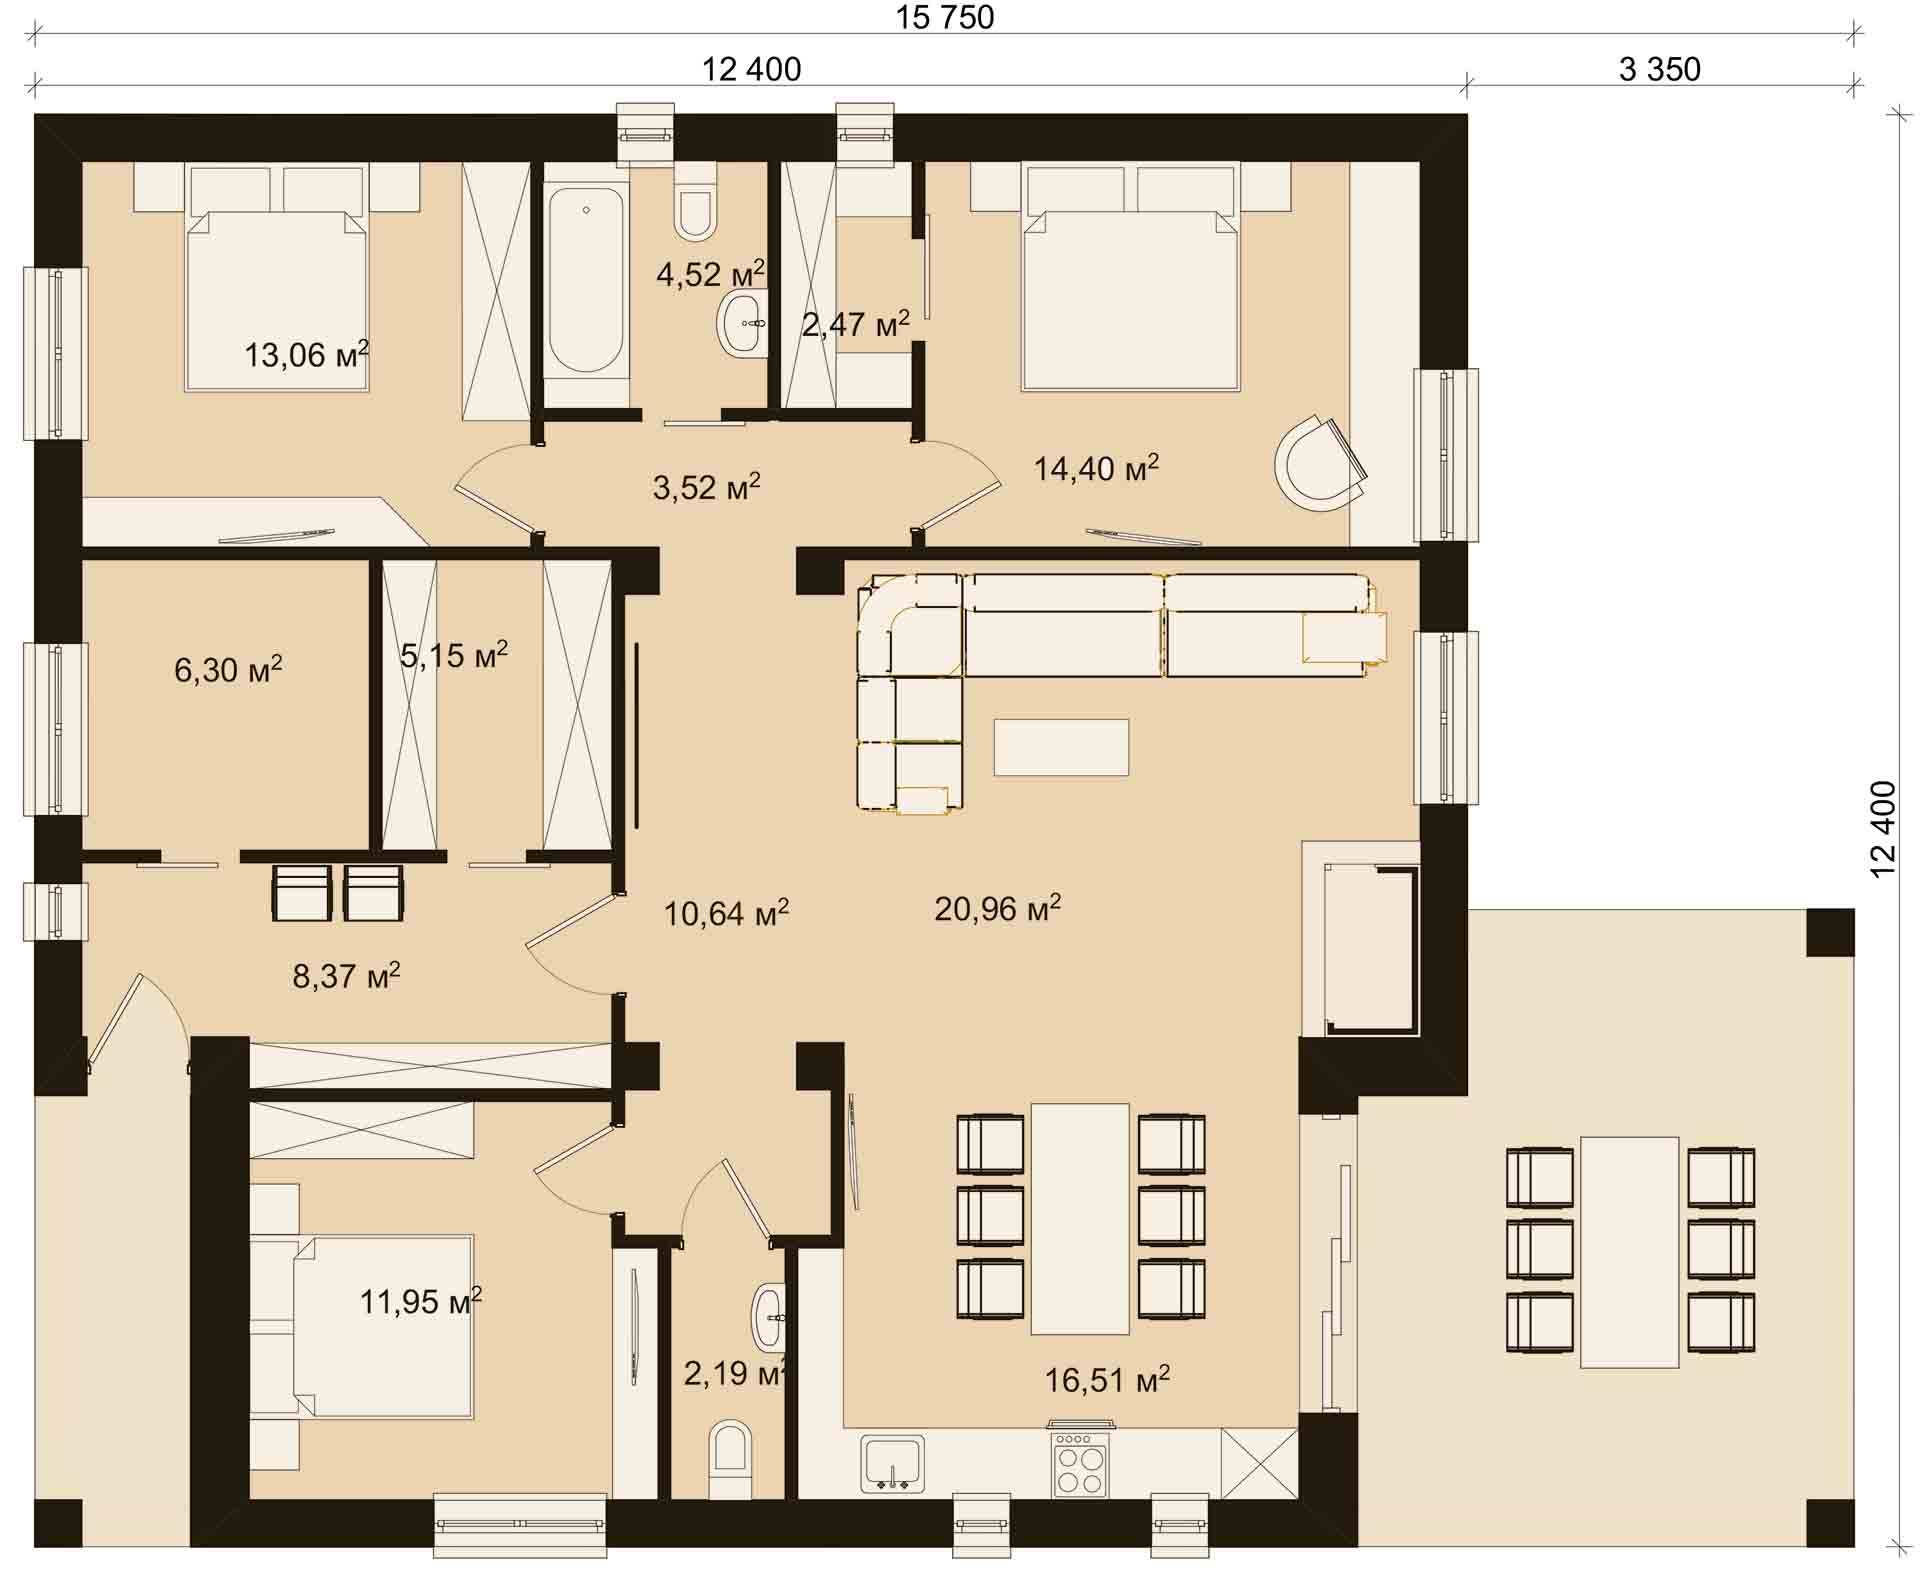 план современного одноэтажного коттеджа из пеноблоков размером 12 х 12 метров с тремя спальнями от бюро ИНВАПОЛИС